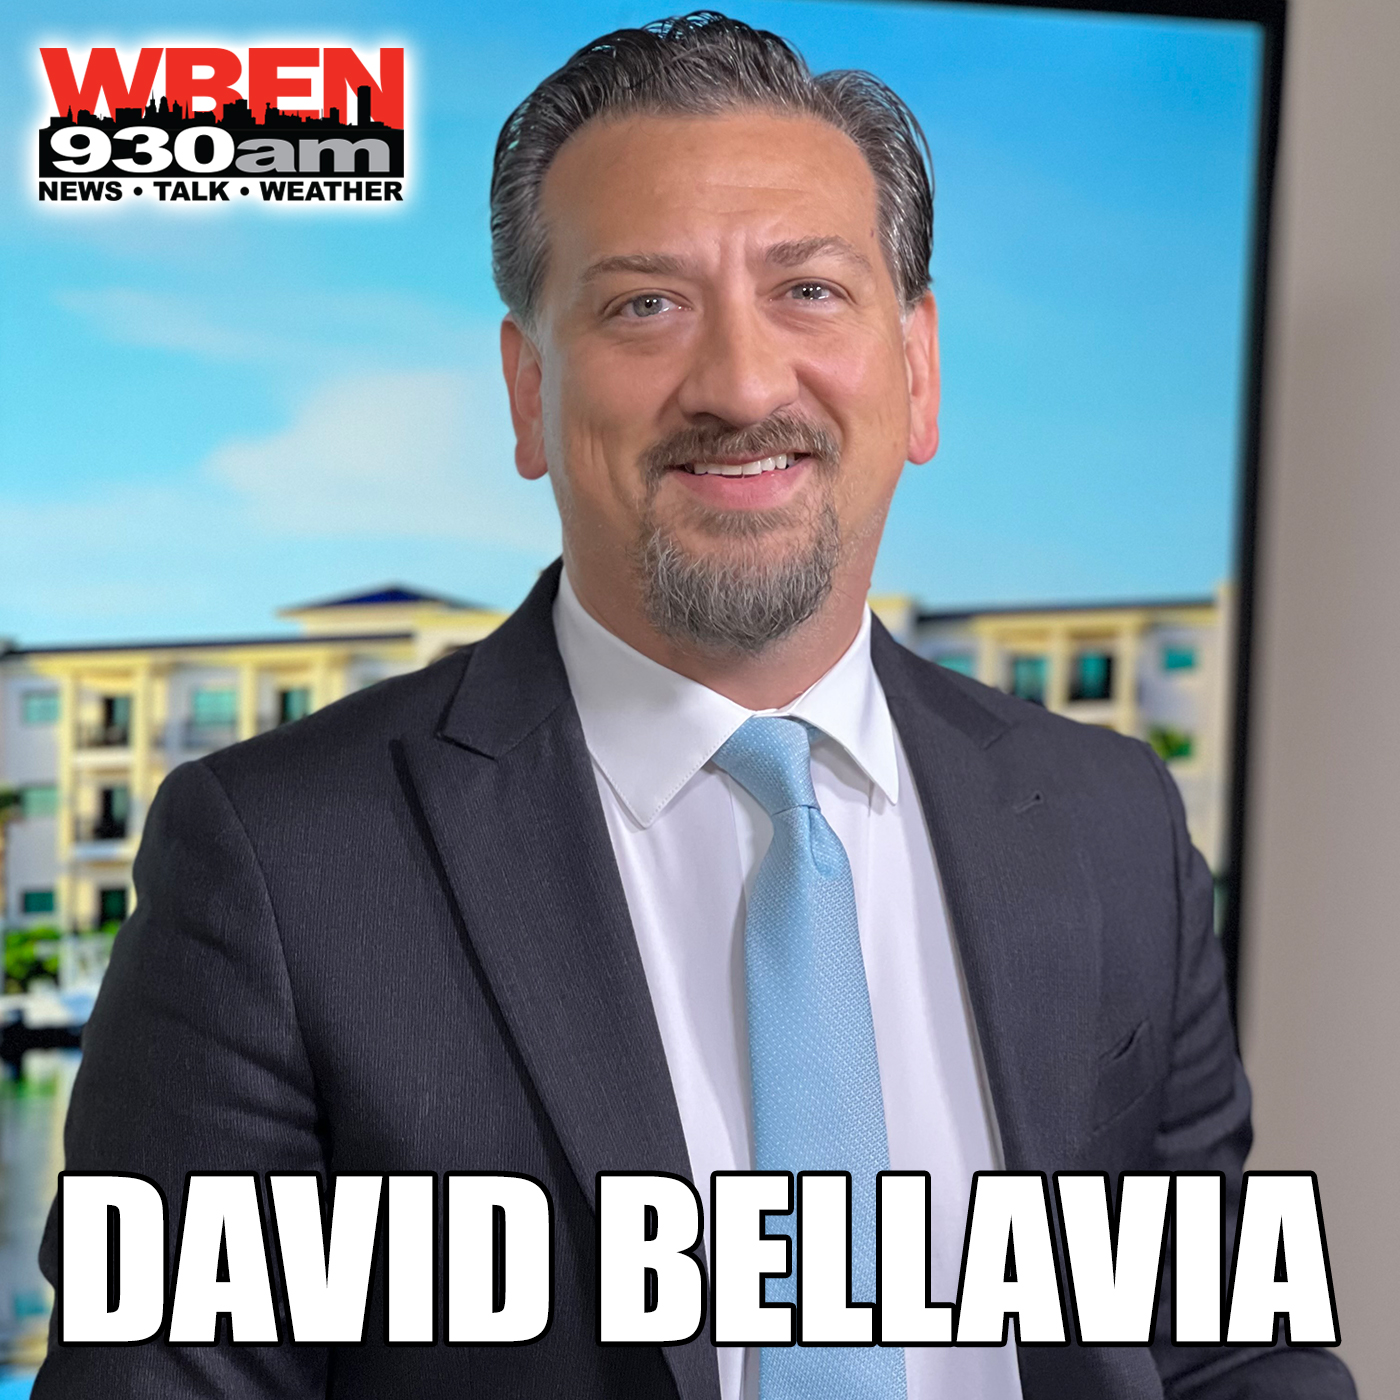 5/3/24 Joe Beamer fills in for David Bellavia [Full Show]